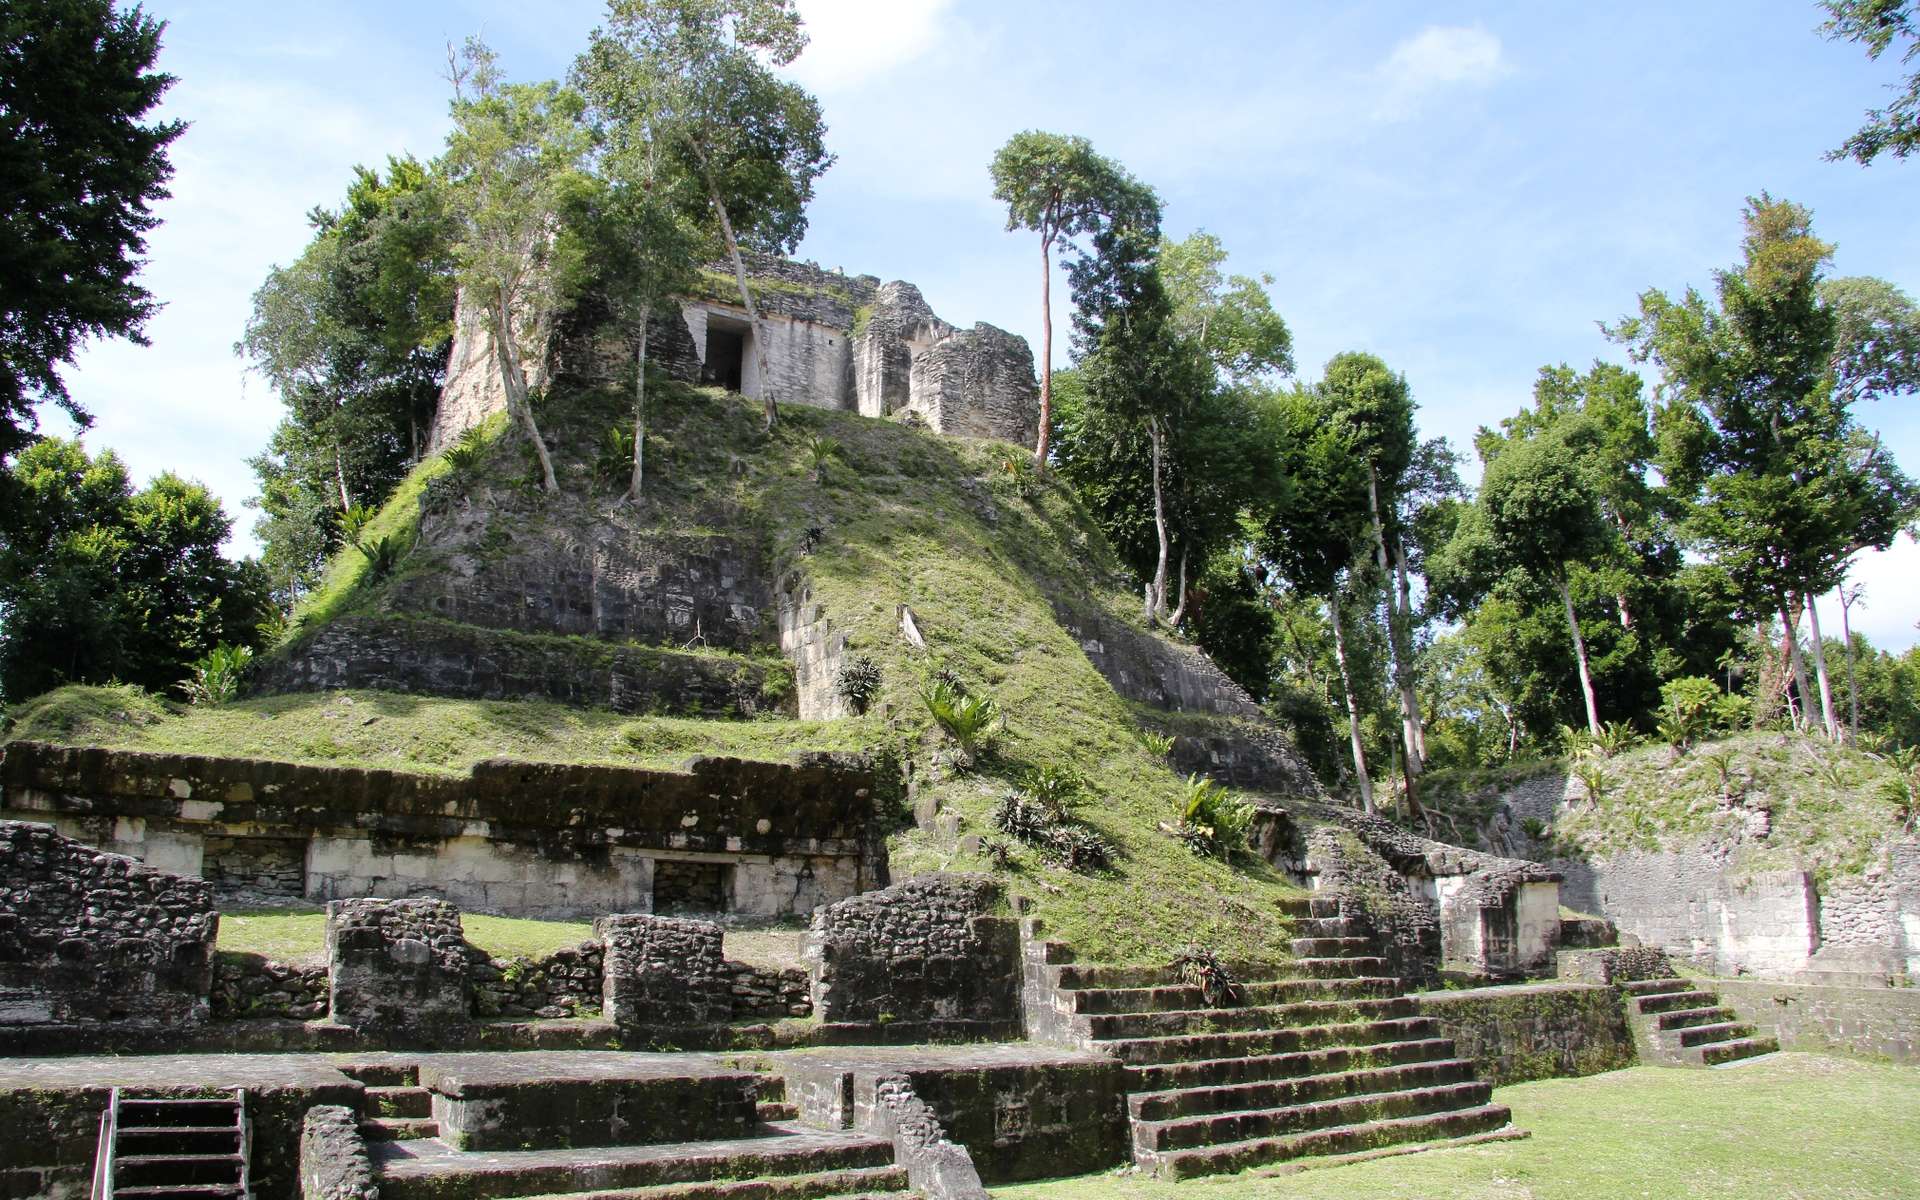 Le site maya de Nakum se trouve dans le département du Petén, au Guatemala, à 17 kilomètres au nord de Yaxha et à 20 kilomètres à l'est de Tikal, sur les rives de la rivière Holmul. Les tombes de cette région révéleront-elles les secrets de l'effondrement de la civilisation maya ? © Jorge Antonio Leoni de Leon, CC by-sa 4.0